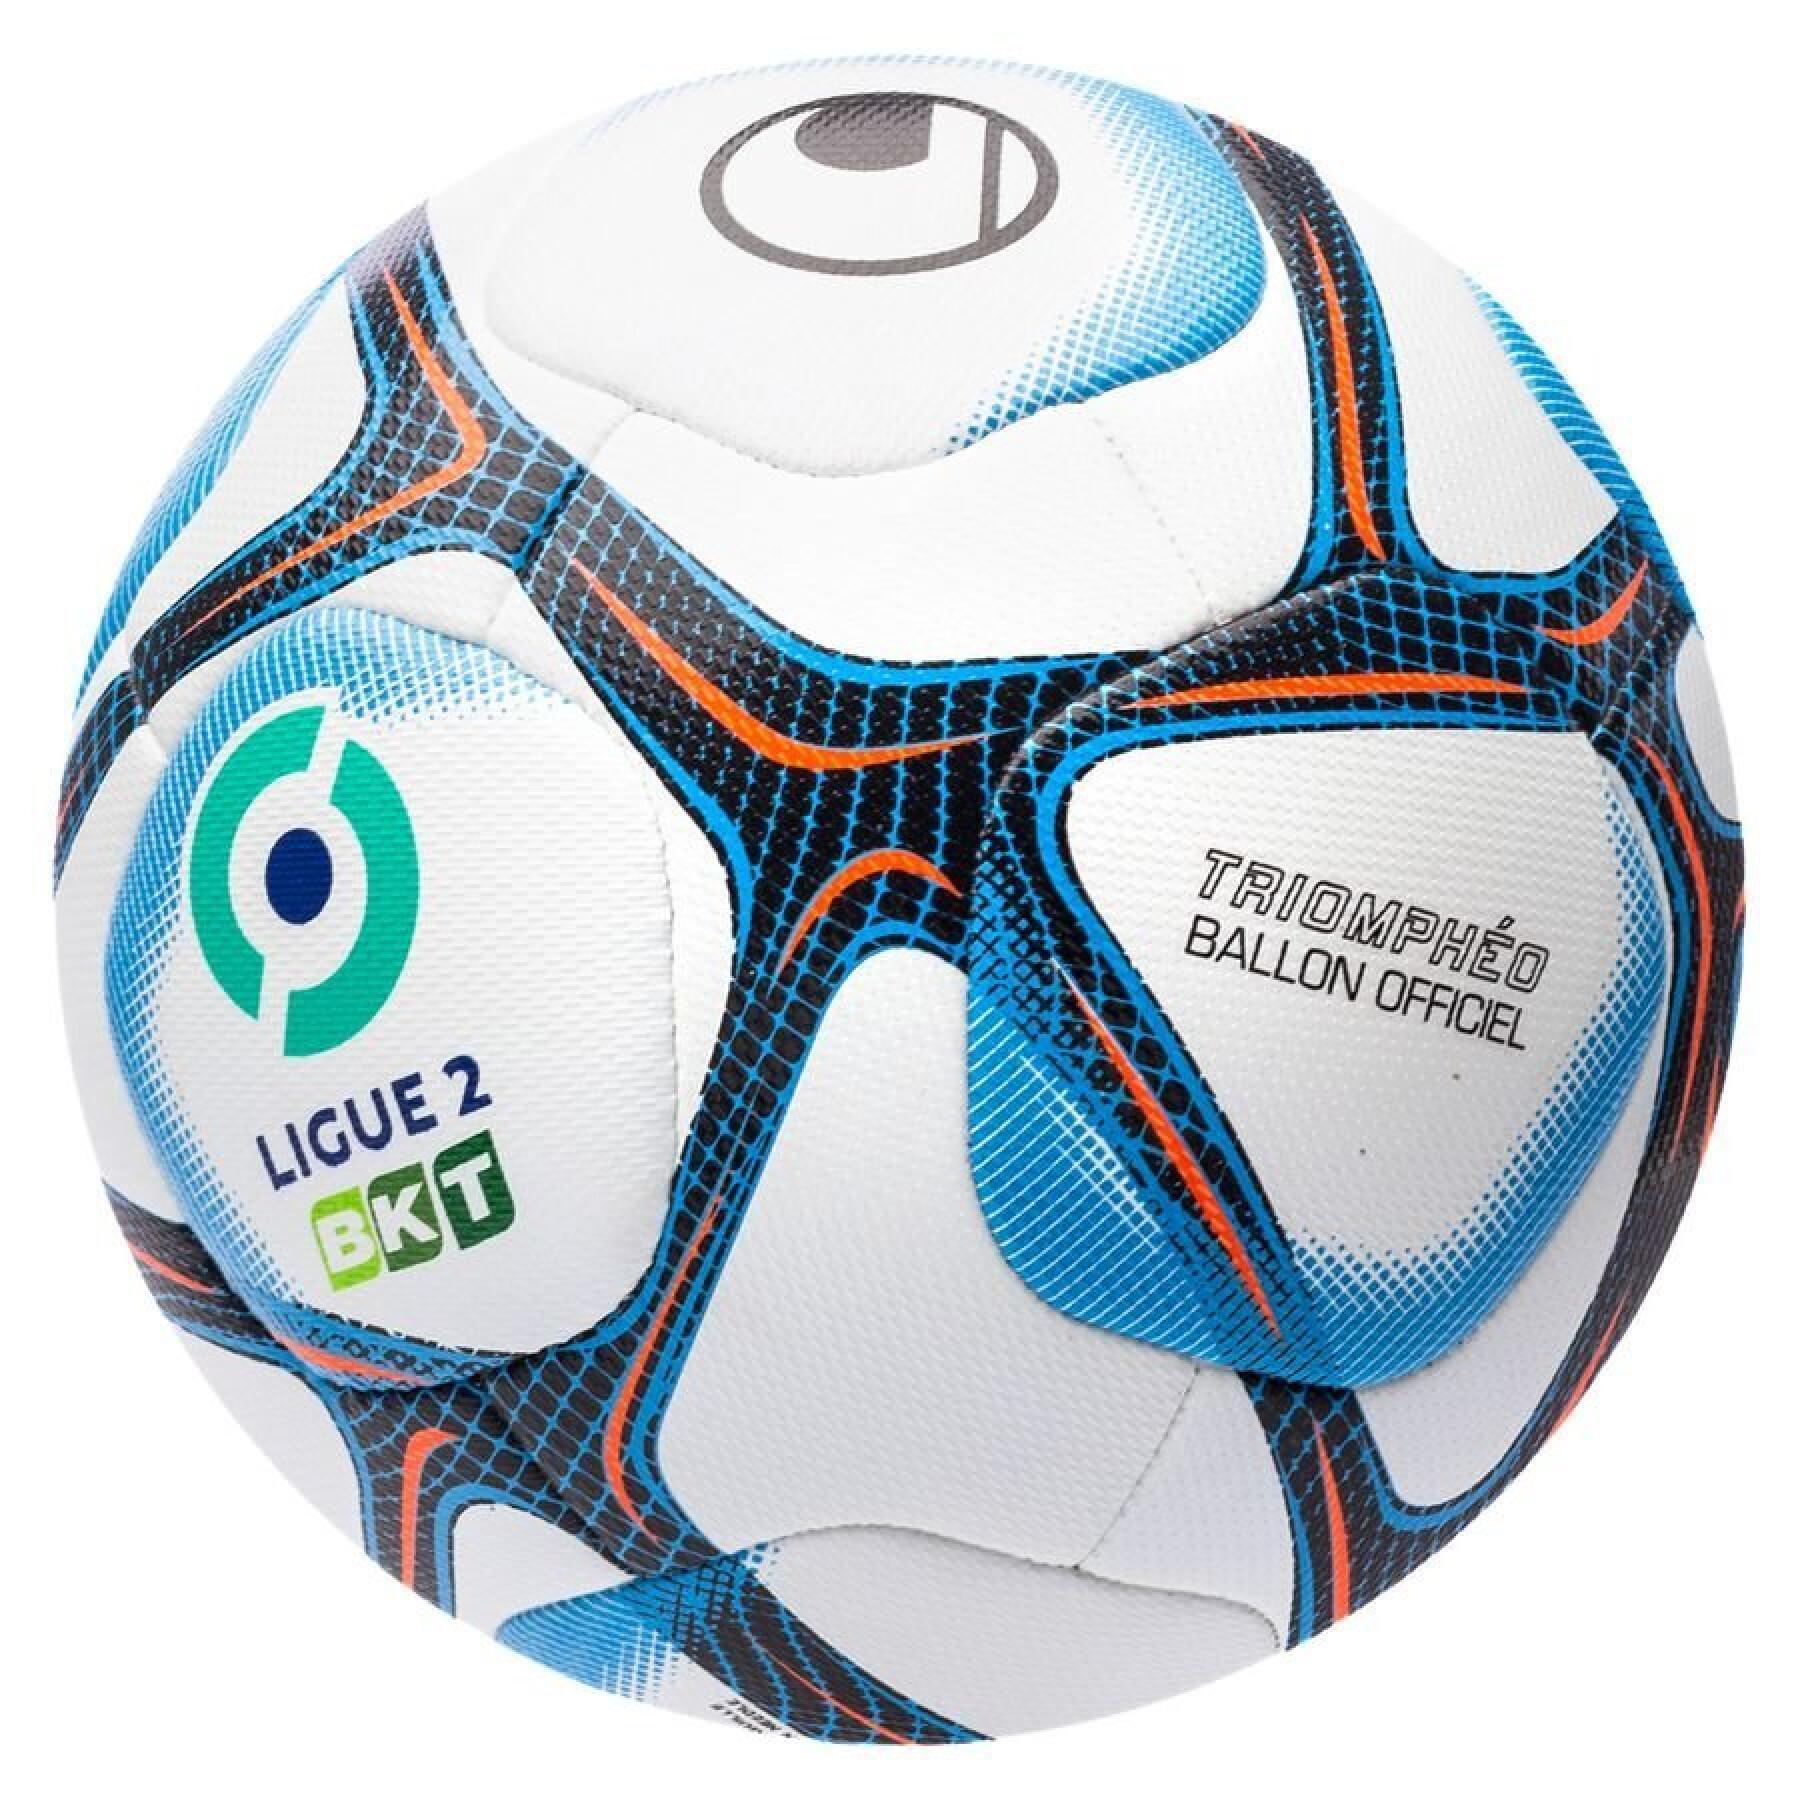 Fútbol oficial Uhlsport Triomphéo 